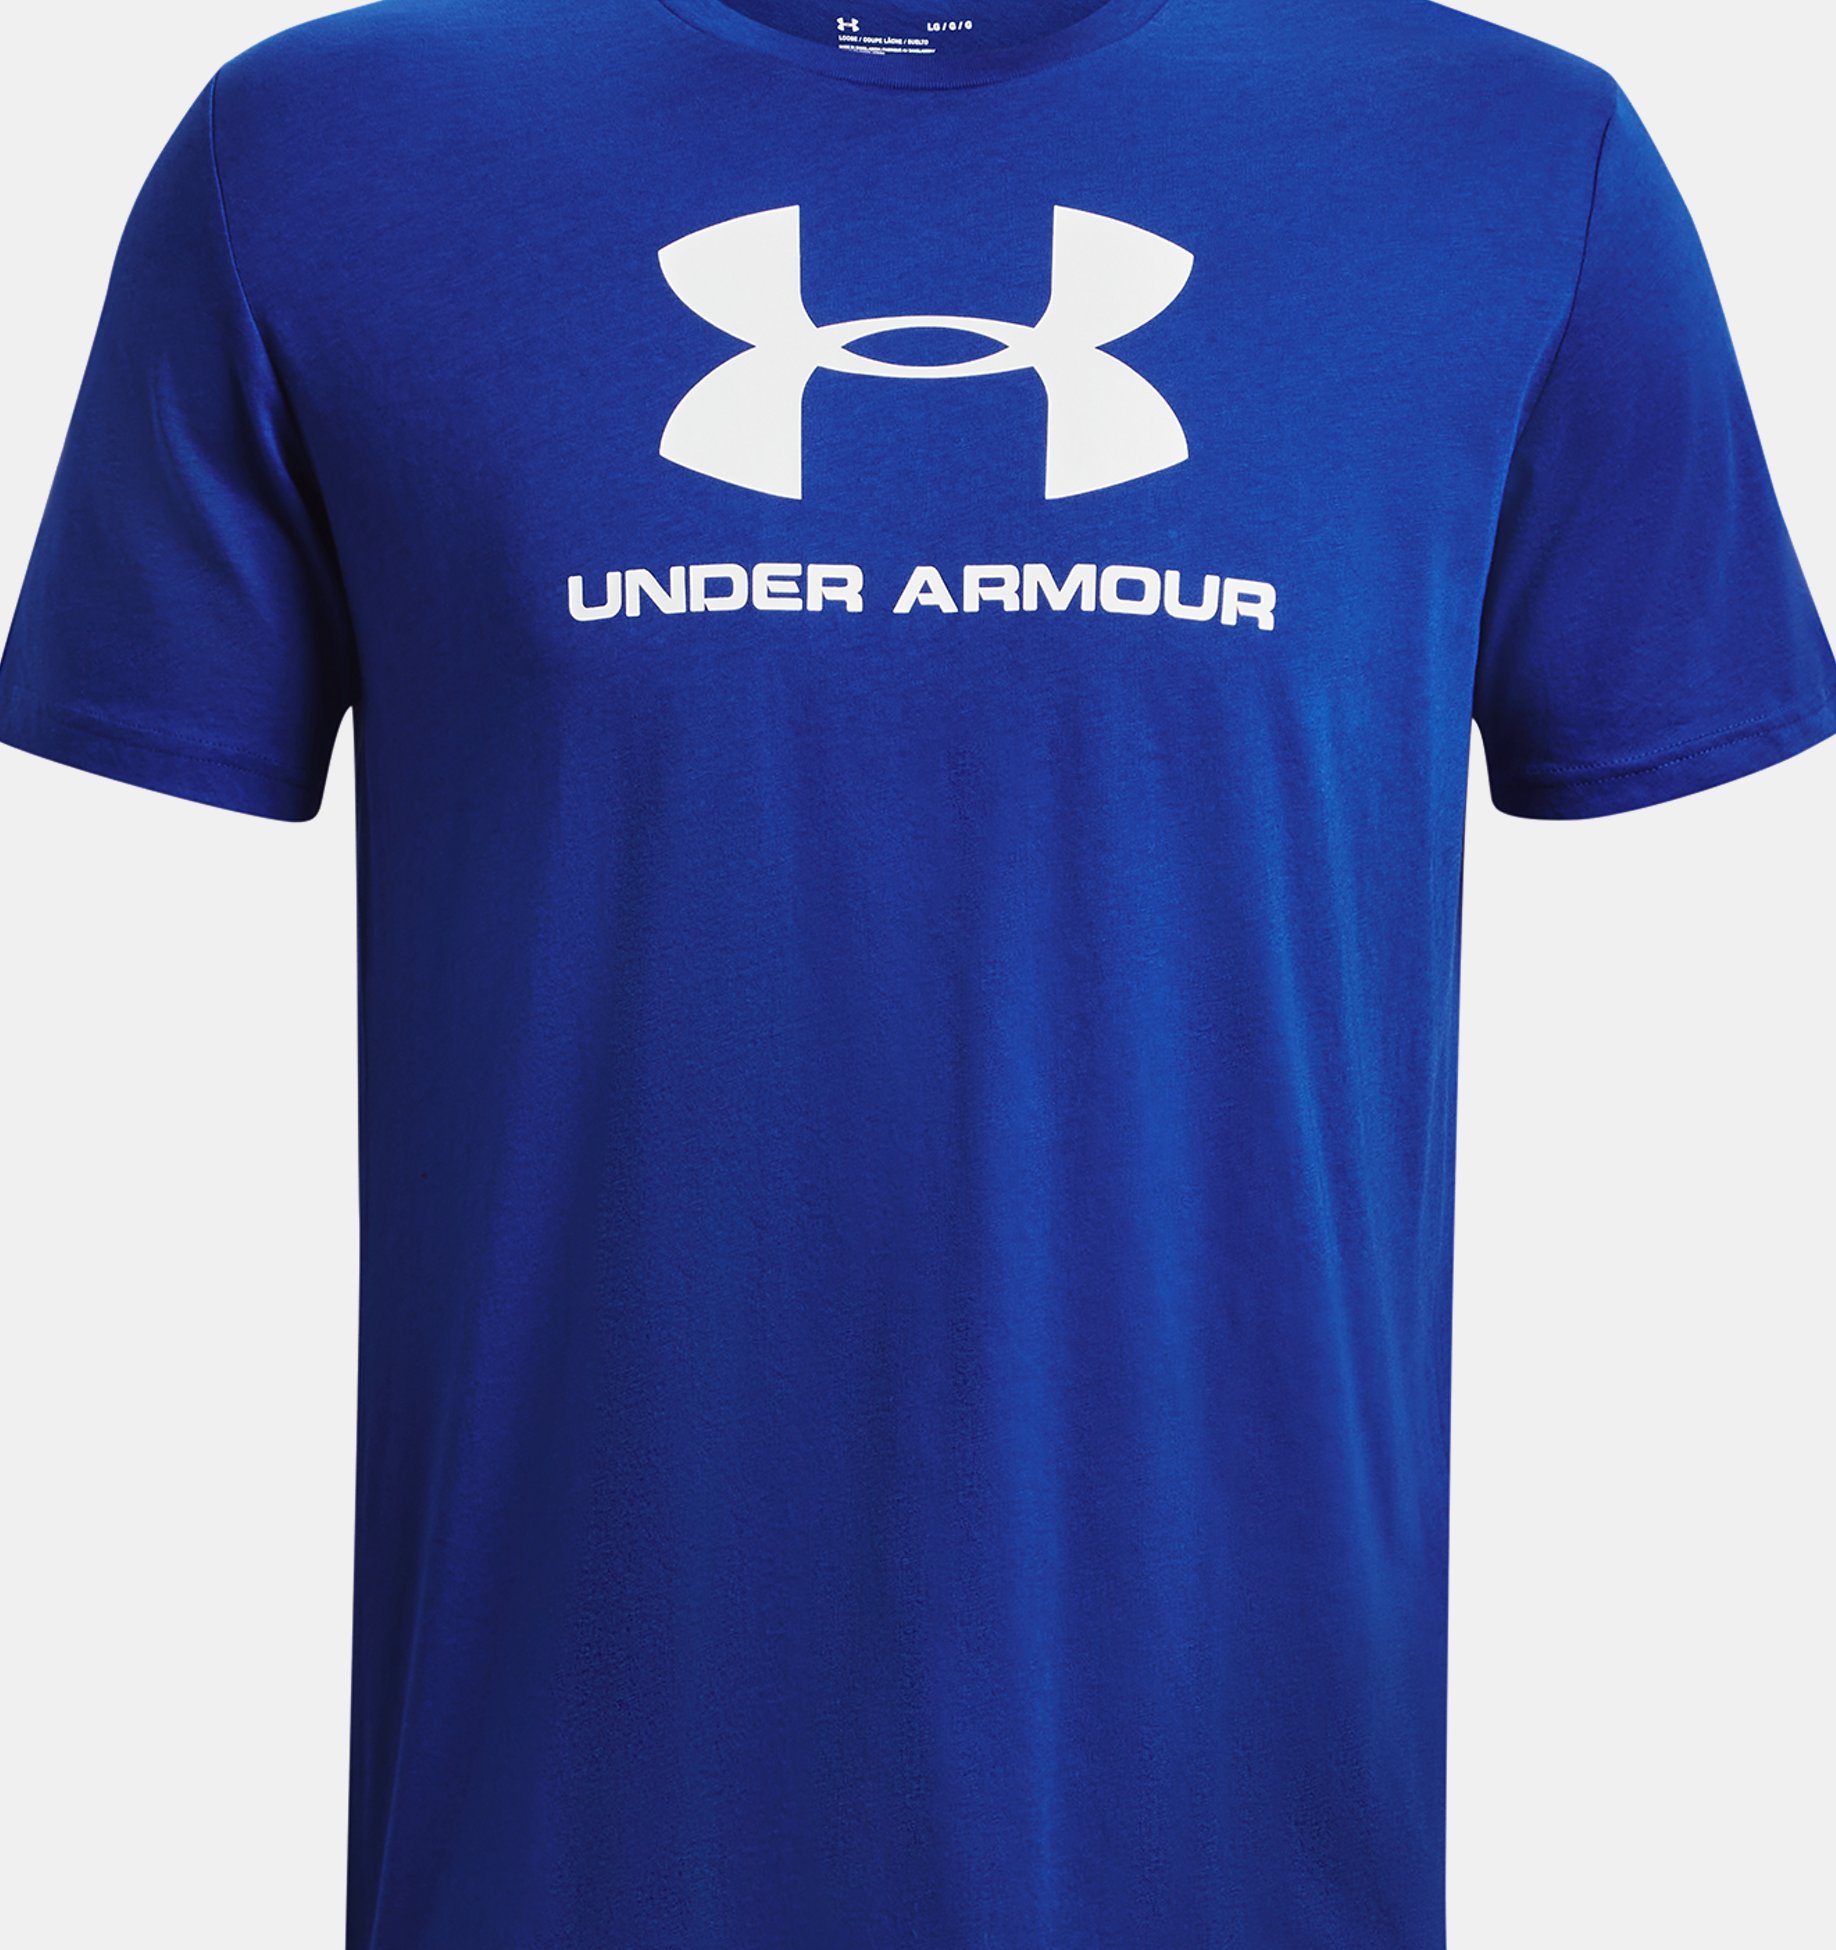 Homme, Under Armour, Logo, Vêtements de sport